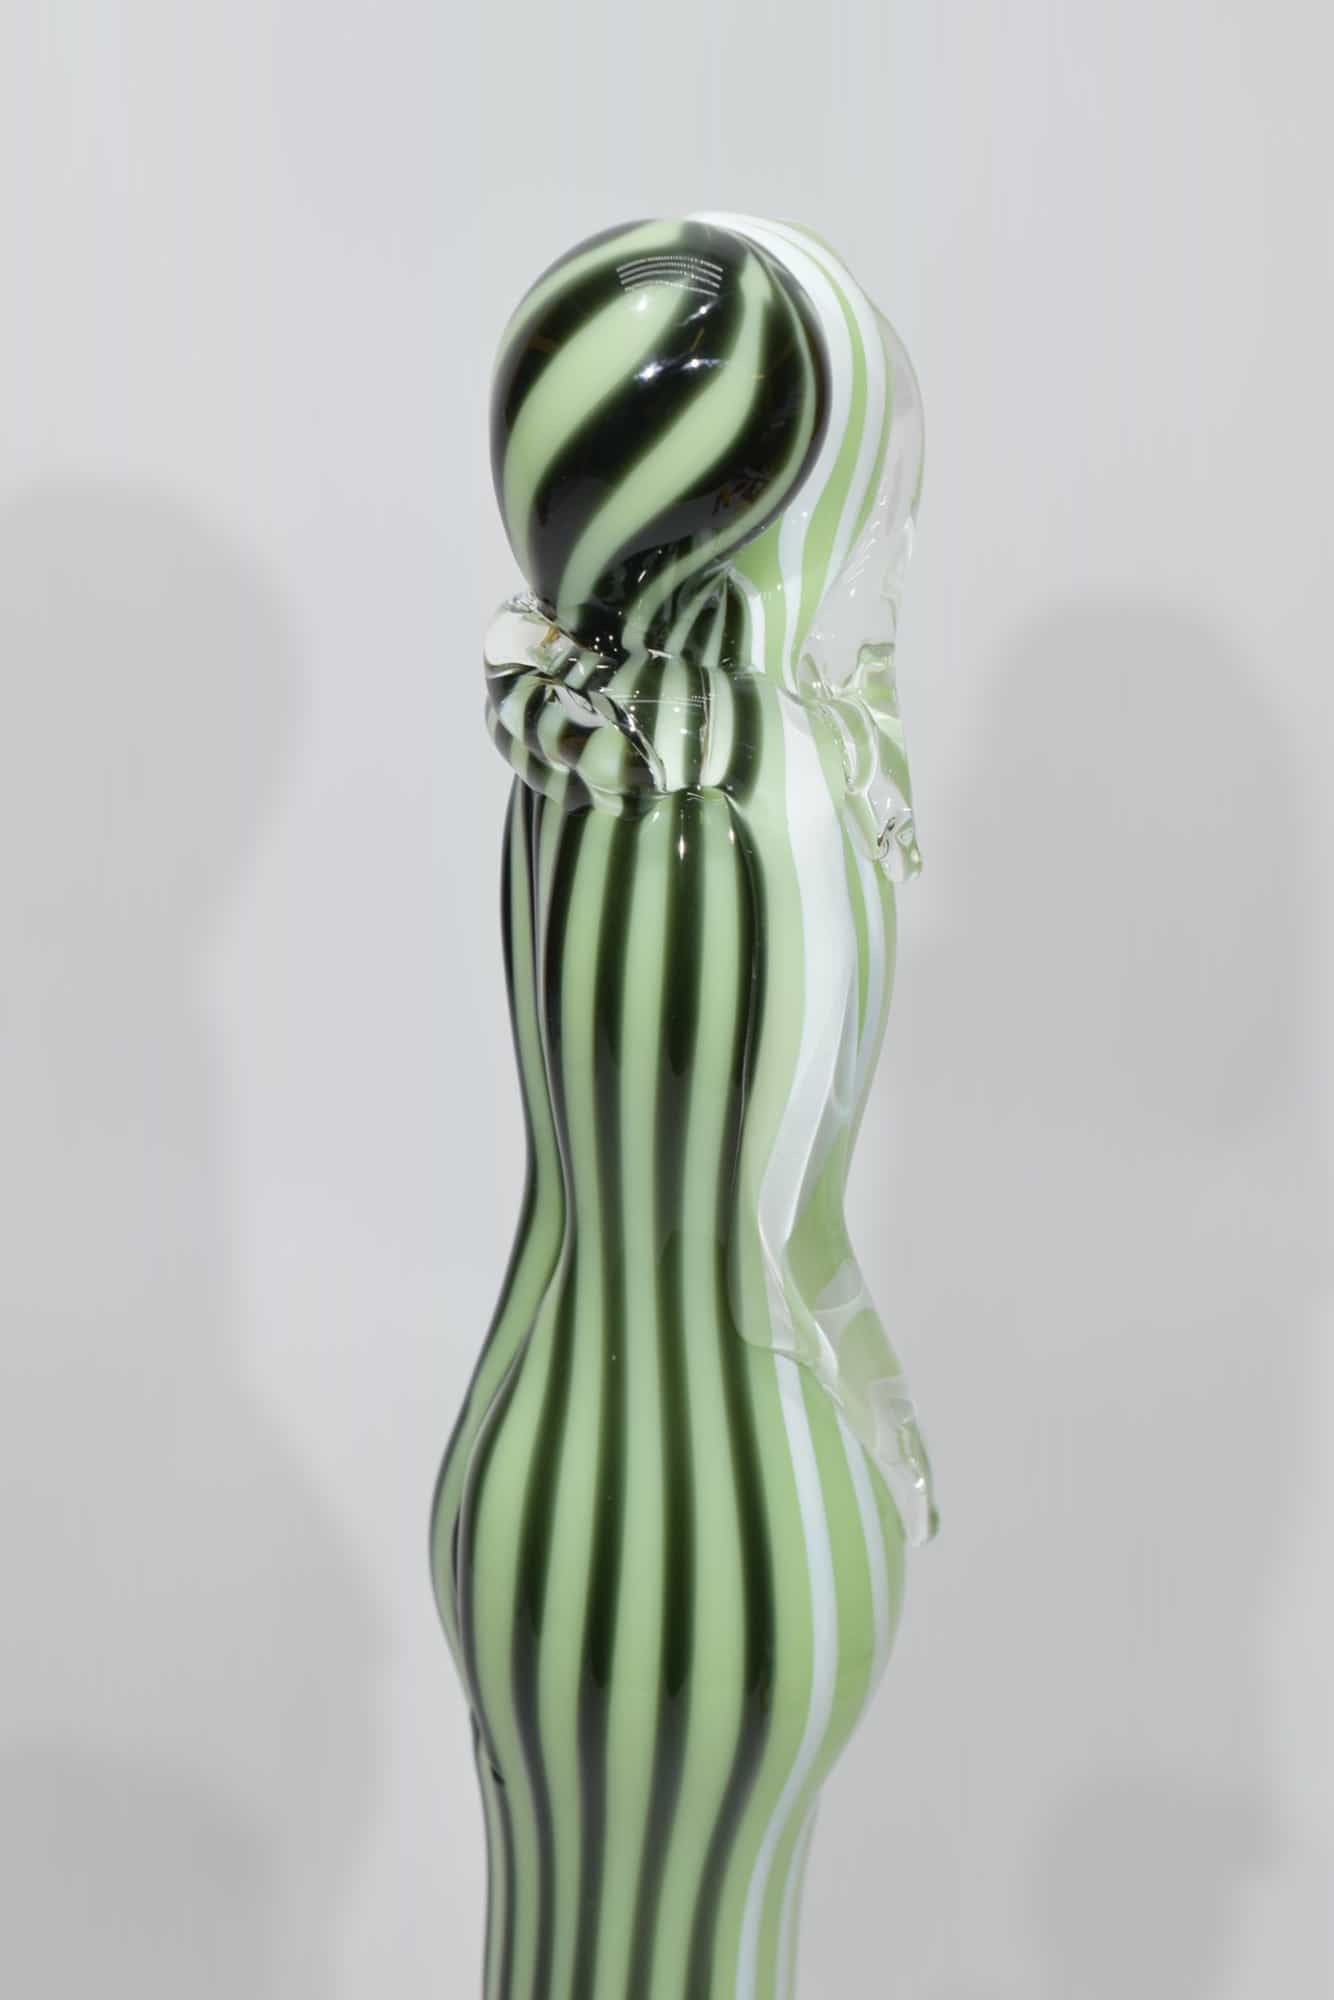 sculpture-lovers-watermark-glass-Murano-glass-10604